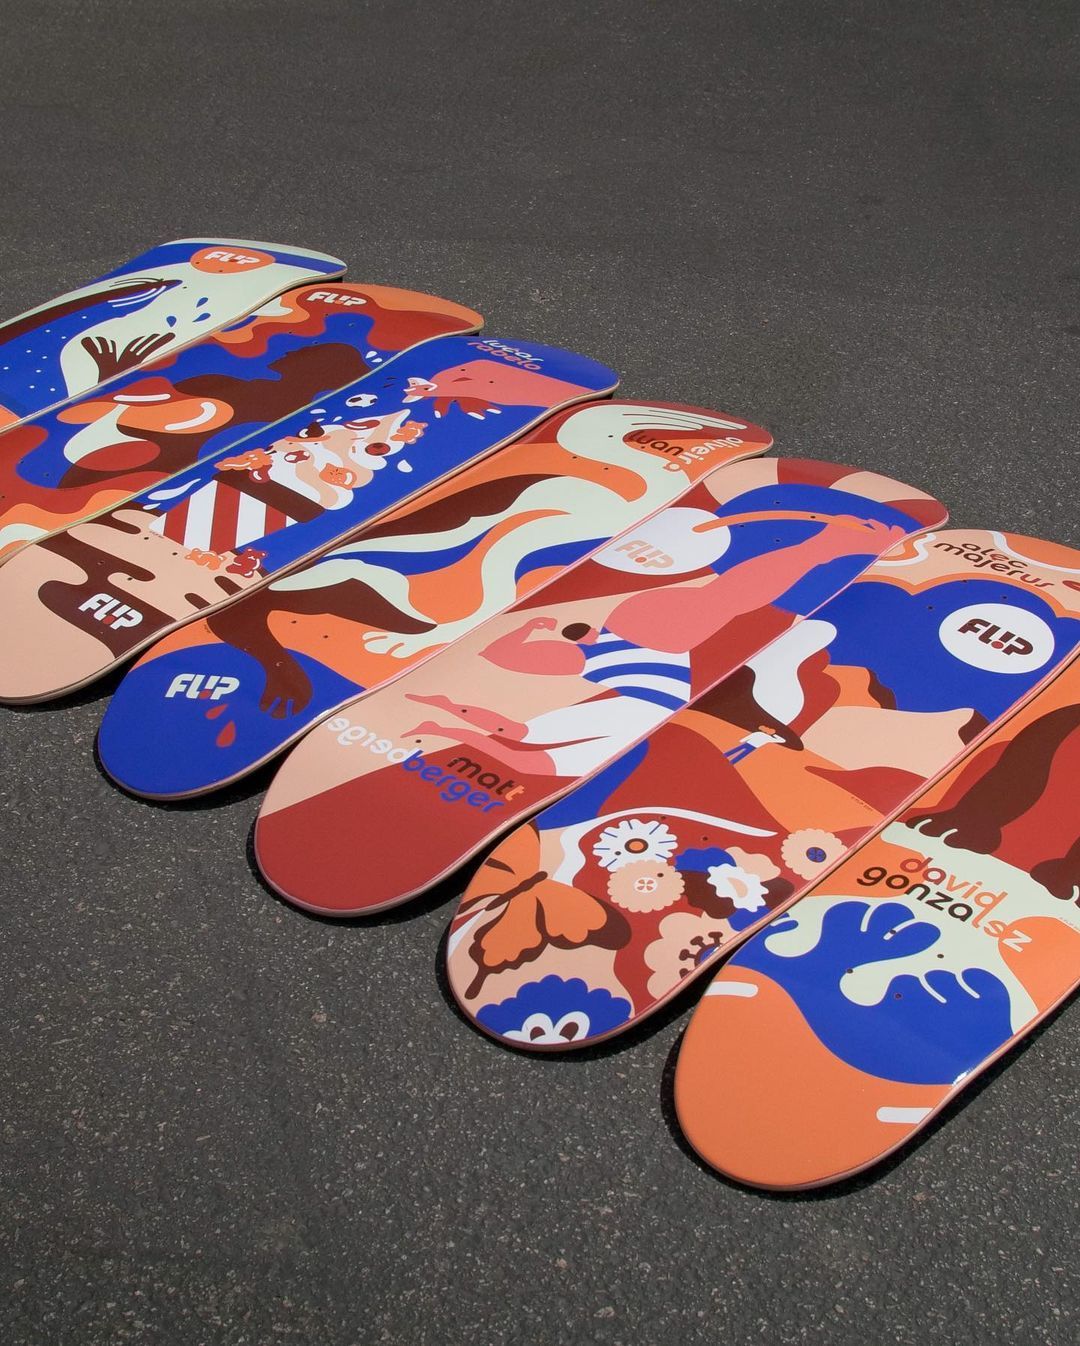 Kaja Series By Kaja Merle X Flip Skateboards3